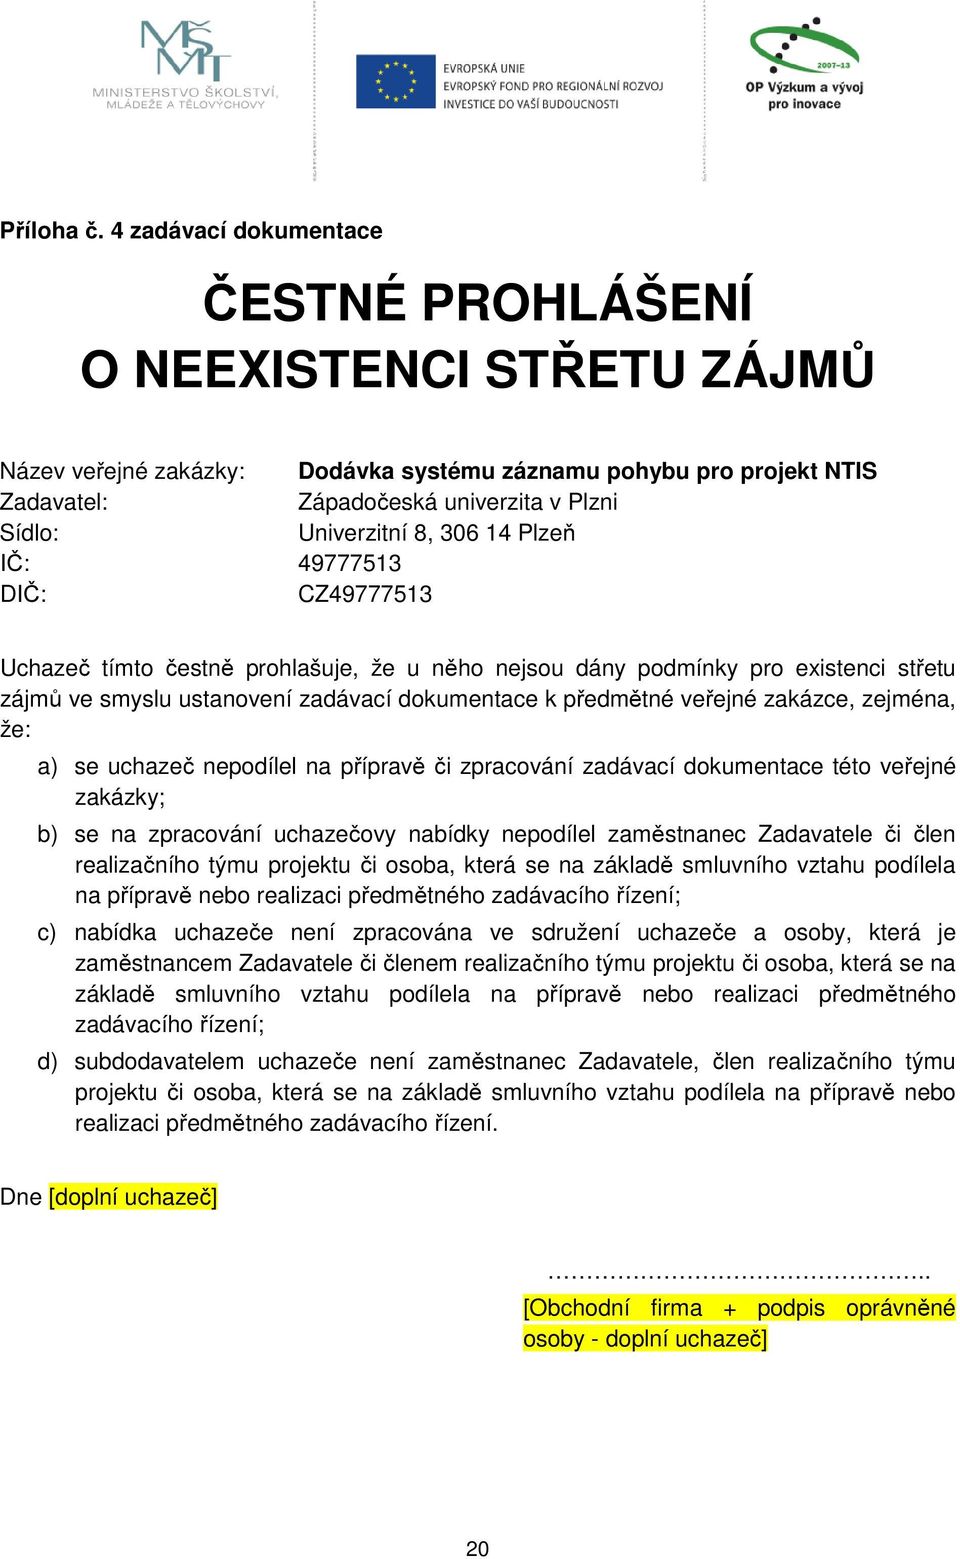 8, 306 14 Plzeň IČ: 49777513 DIČ: CZ49777513 Uchazeč tímto čestně prohlašuje, že u něho nejsou dány podmínky pro existenci střetu zájmů ve smyslu ustanovení zadávací dokumentace k předmětné veřejné